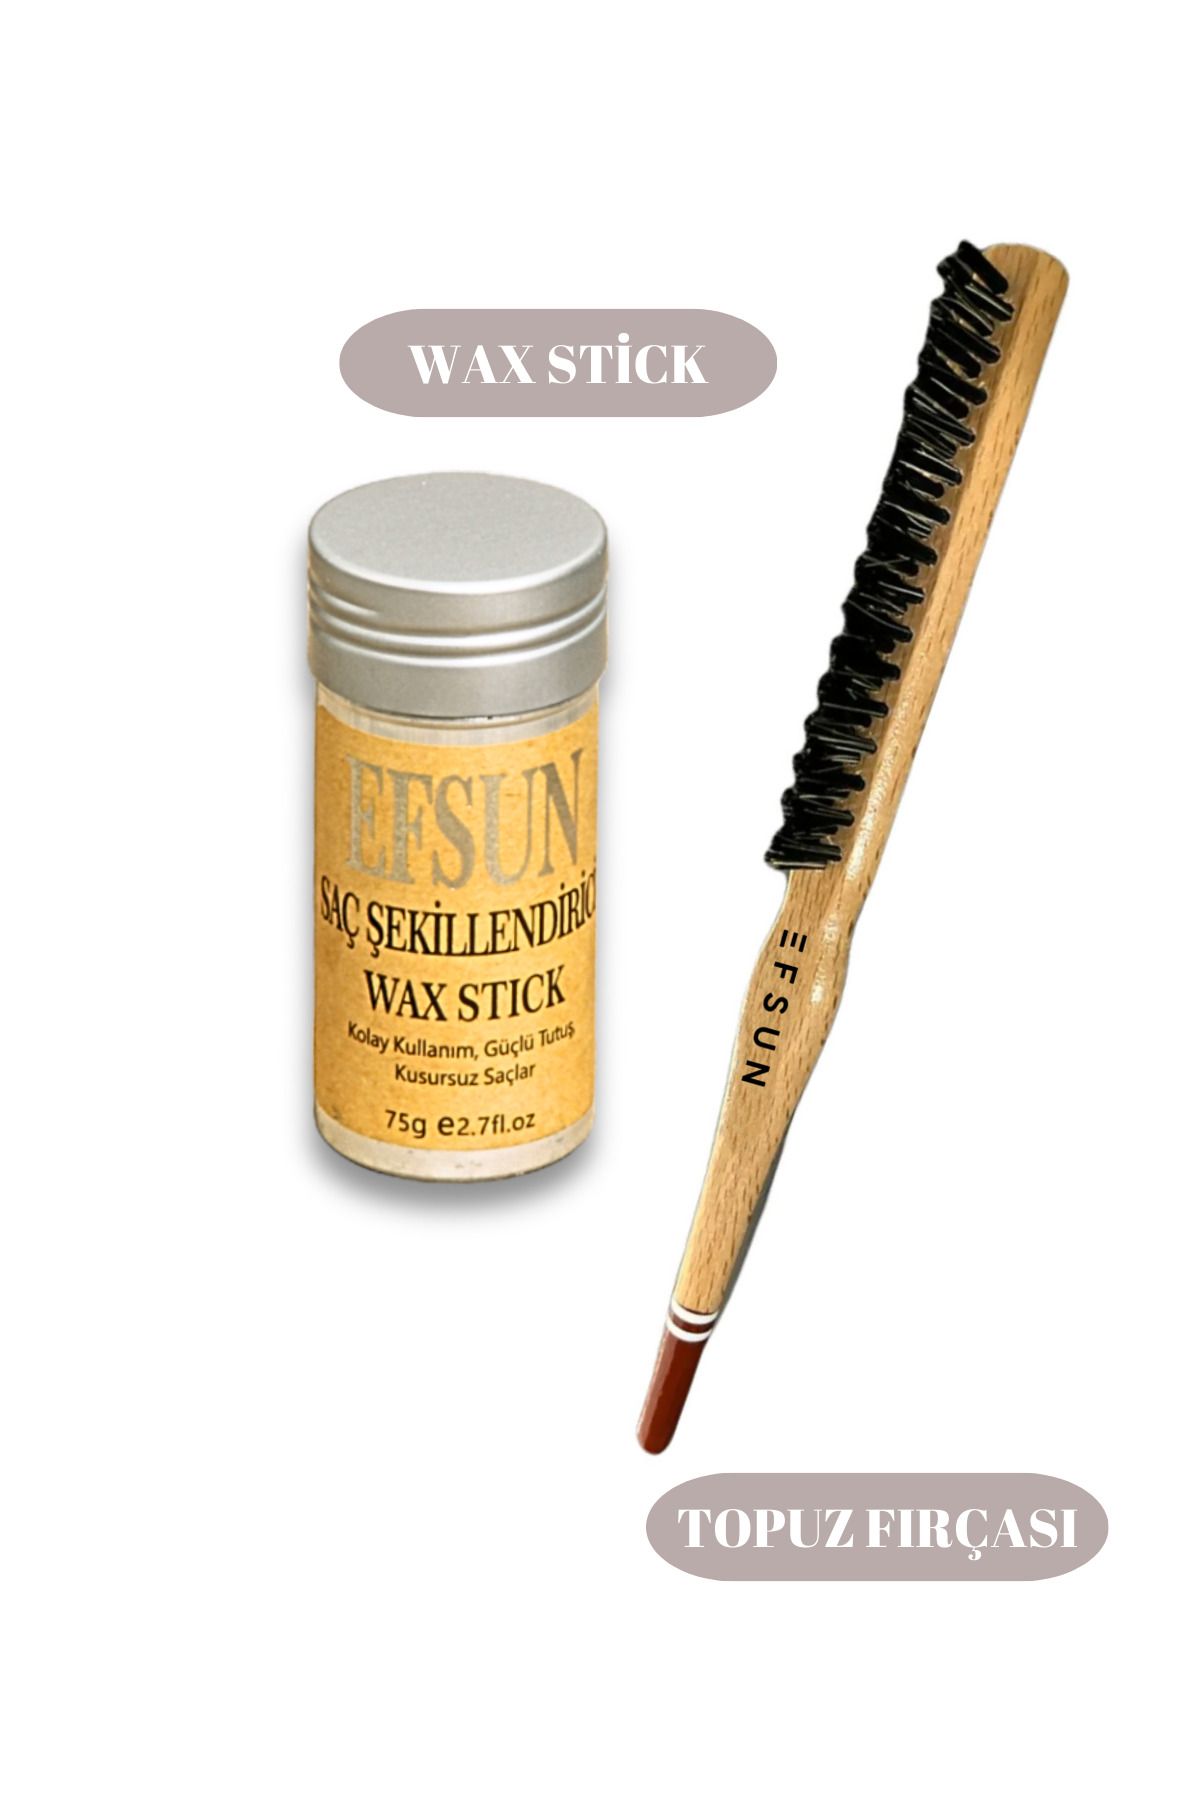 Efsun Wax Stick ve Profesyonel Topuz Fırçası